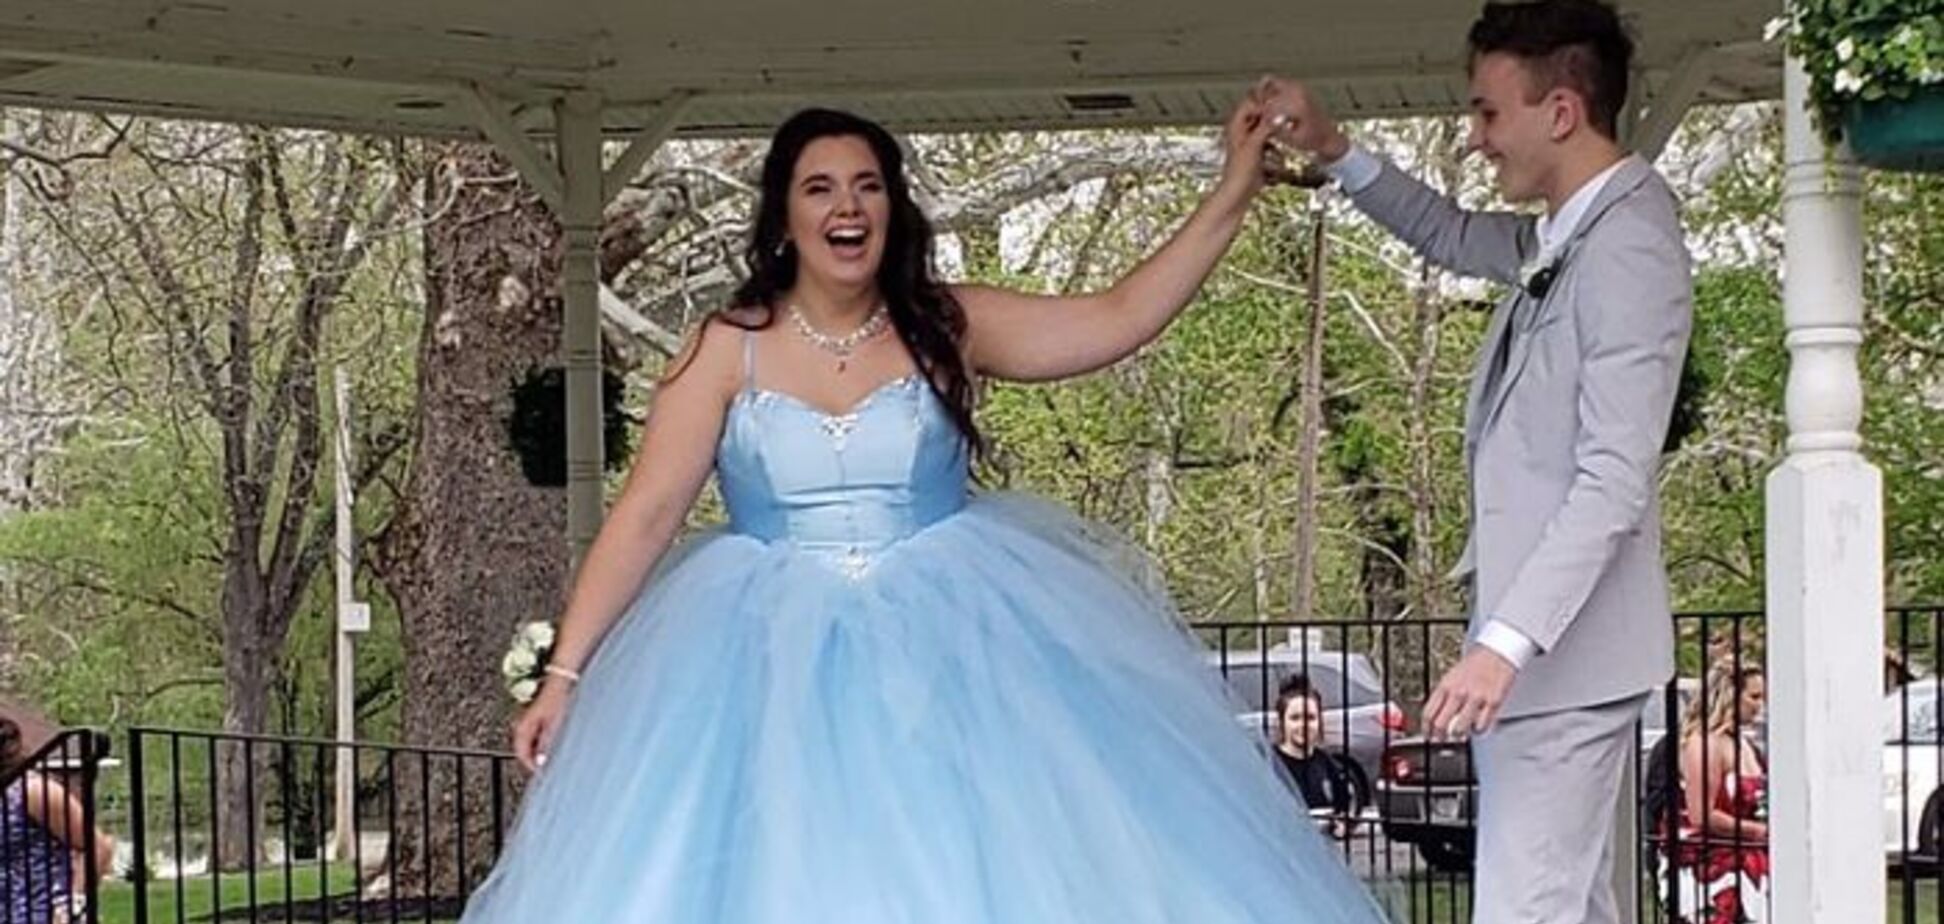 Парень сшил выпускное платье для своей одноклассницы: история подростков тронула мир